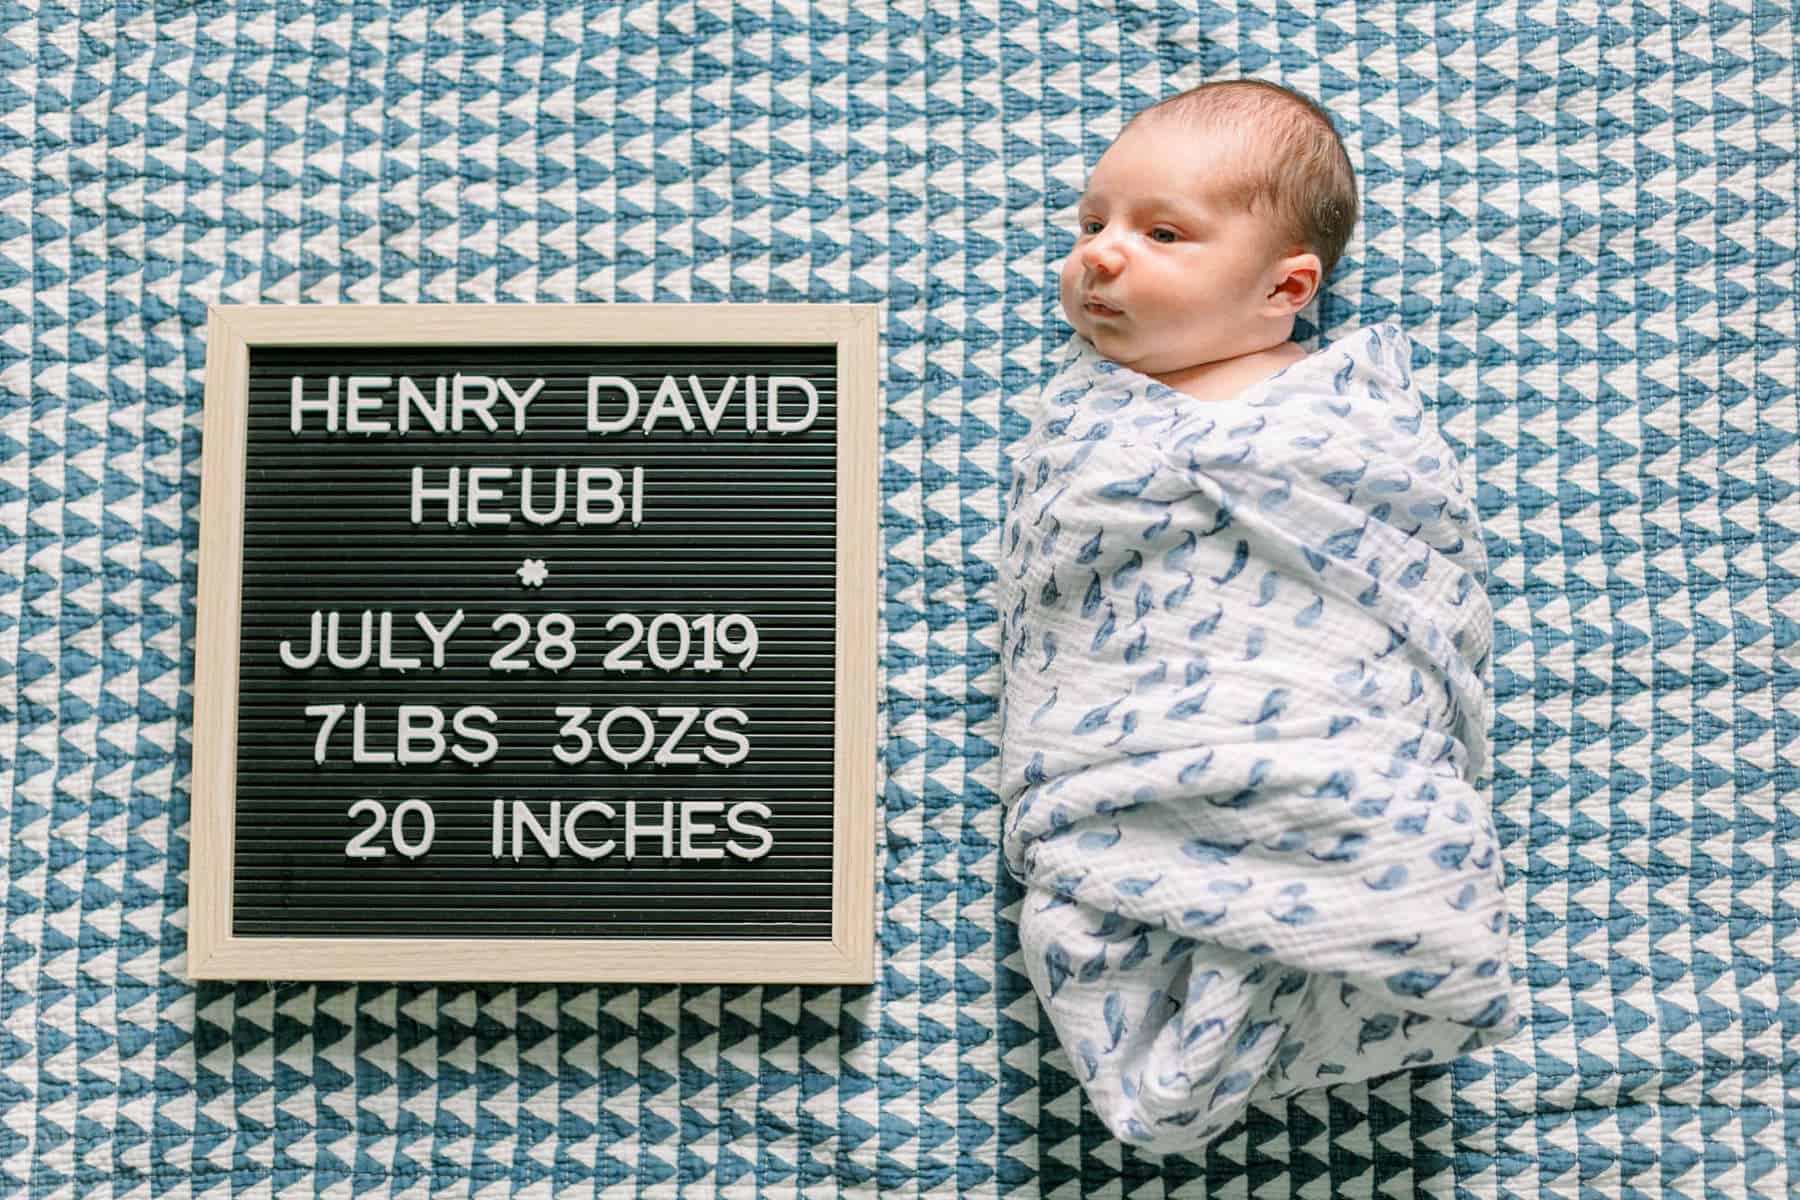 Heubi family fredericksburg newborn photographer 132